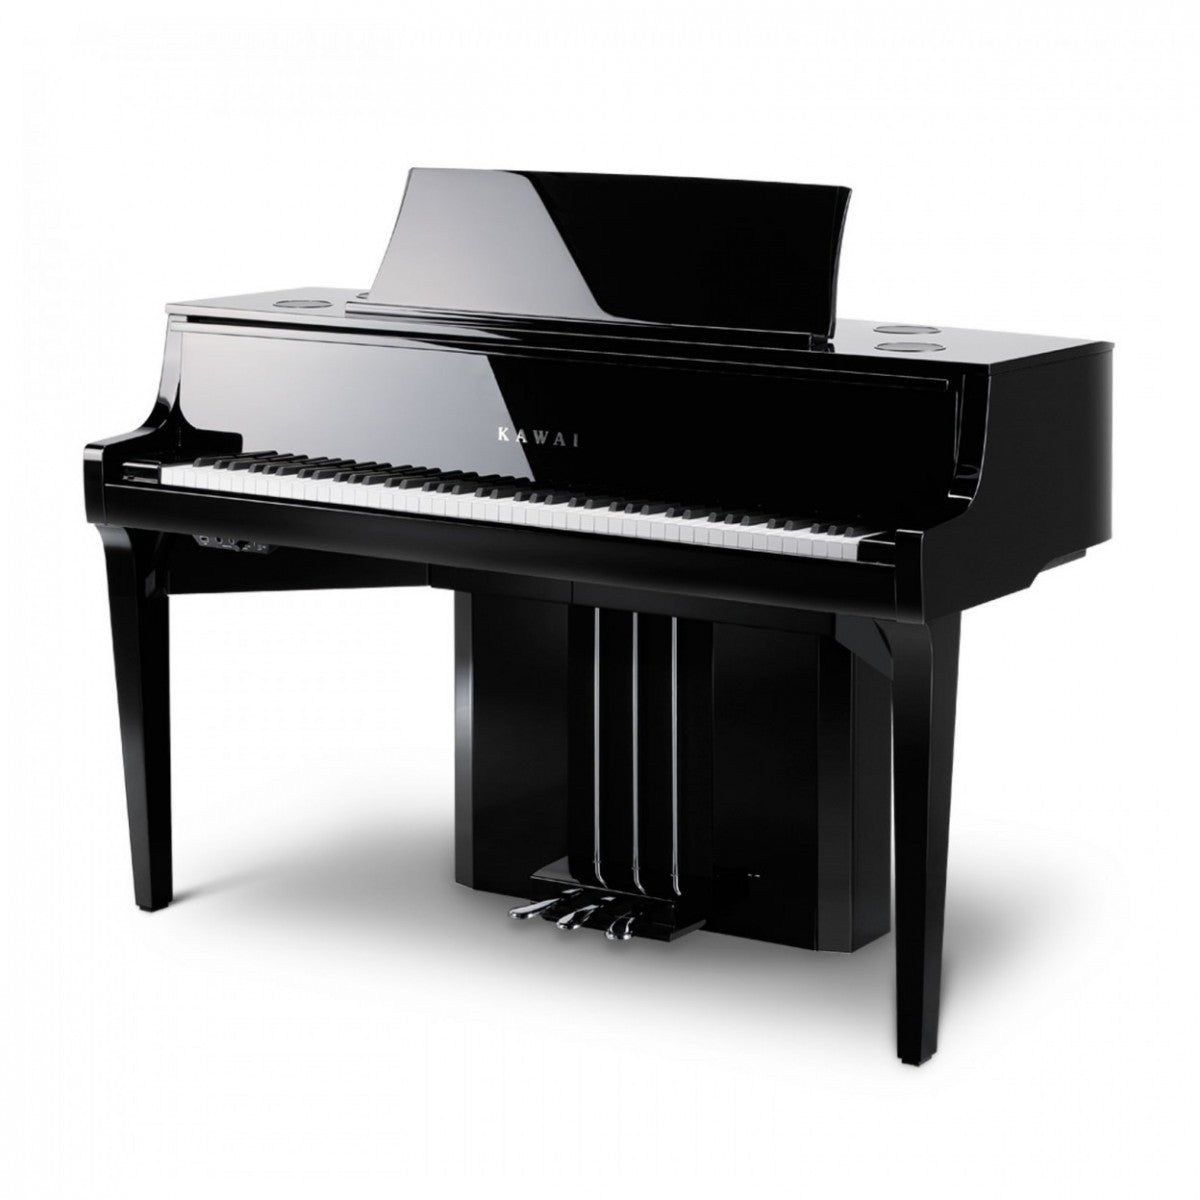 Piano Hybrid - Piano Lai Giữa Điện Và Cơ